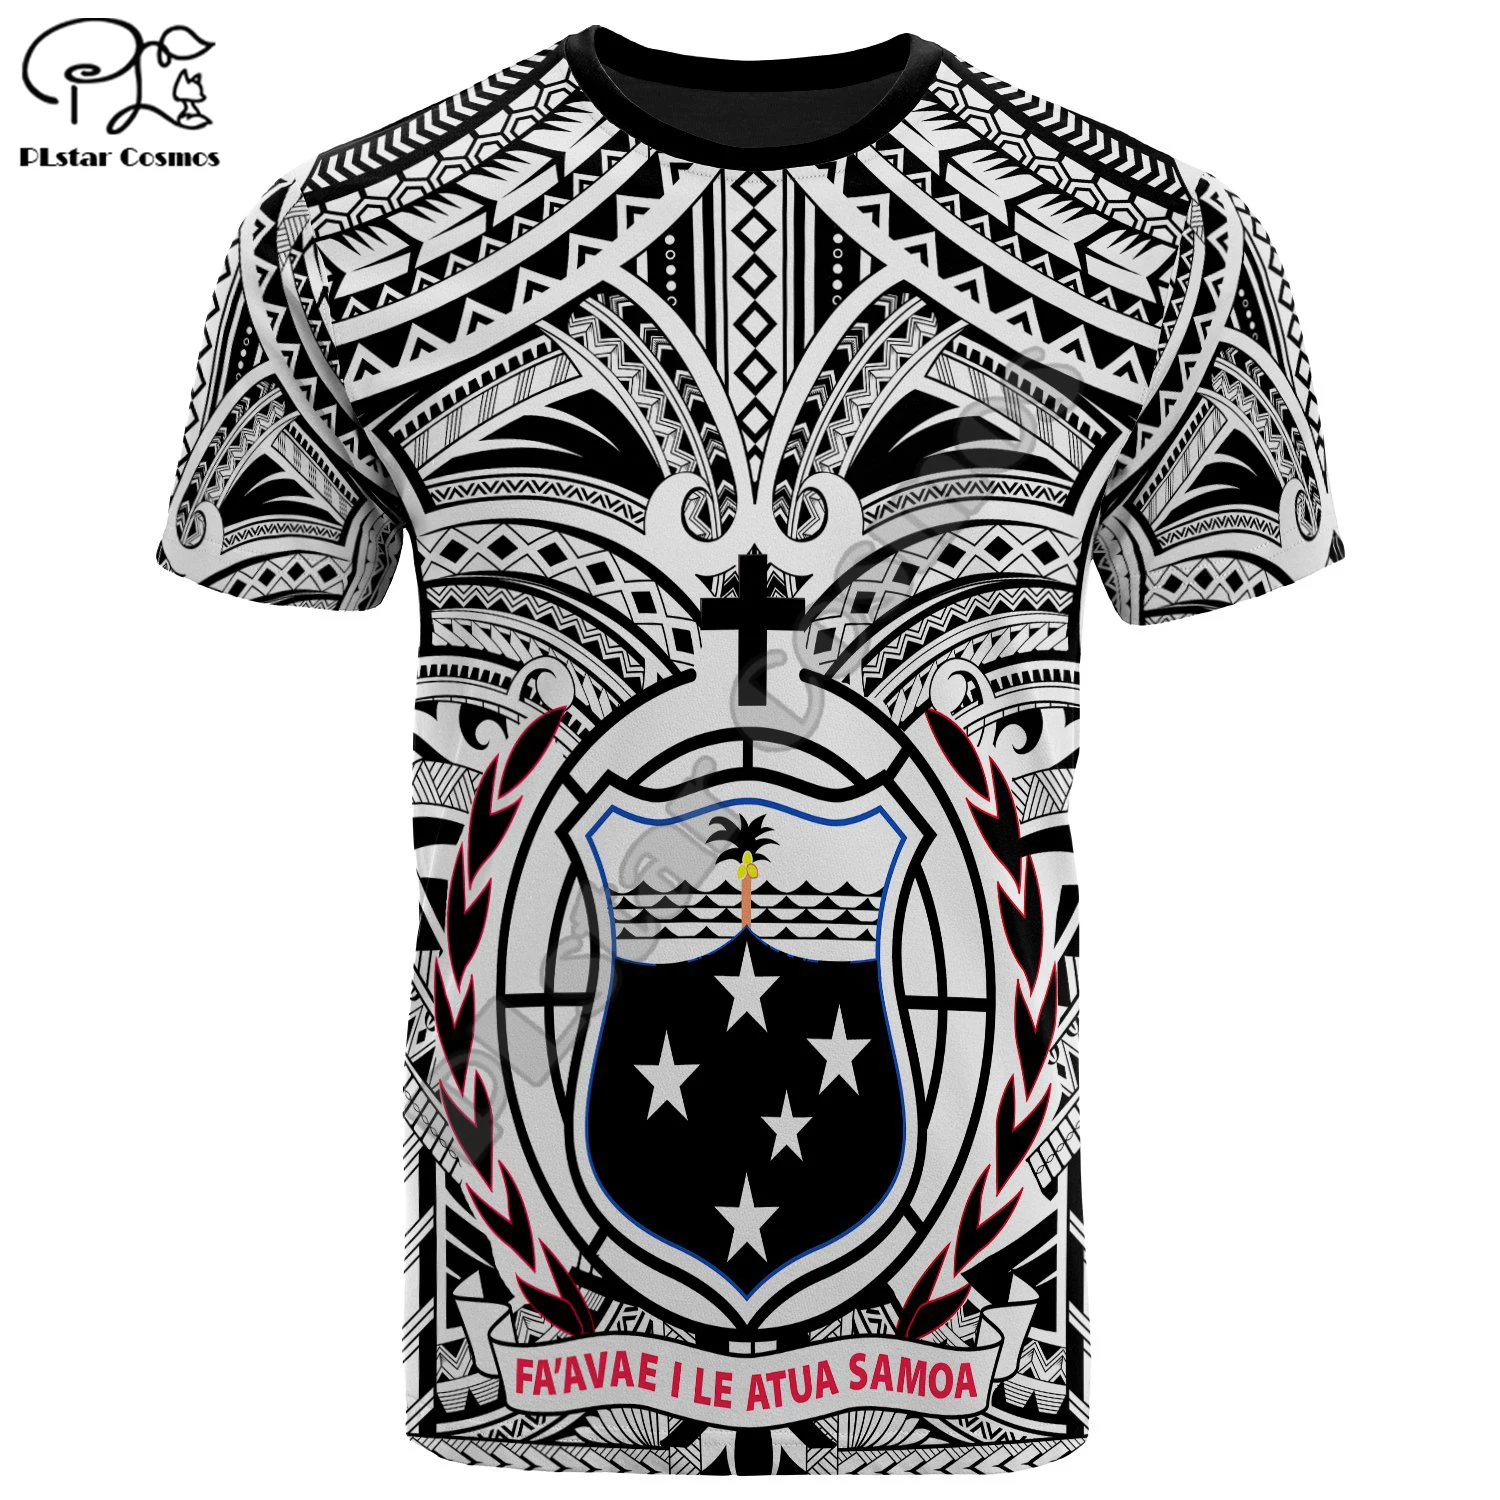 Футболка PLstar Cosmos 3 с принтом татуировок Самоа художественная культура новая мода